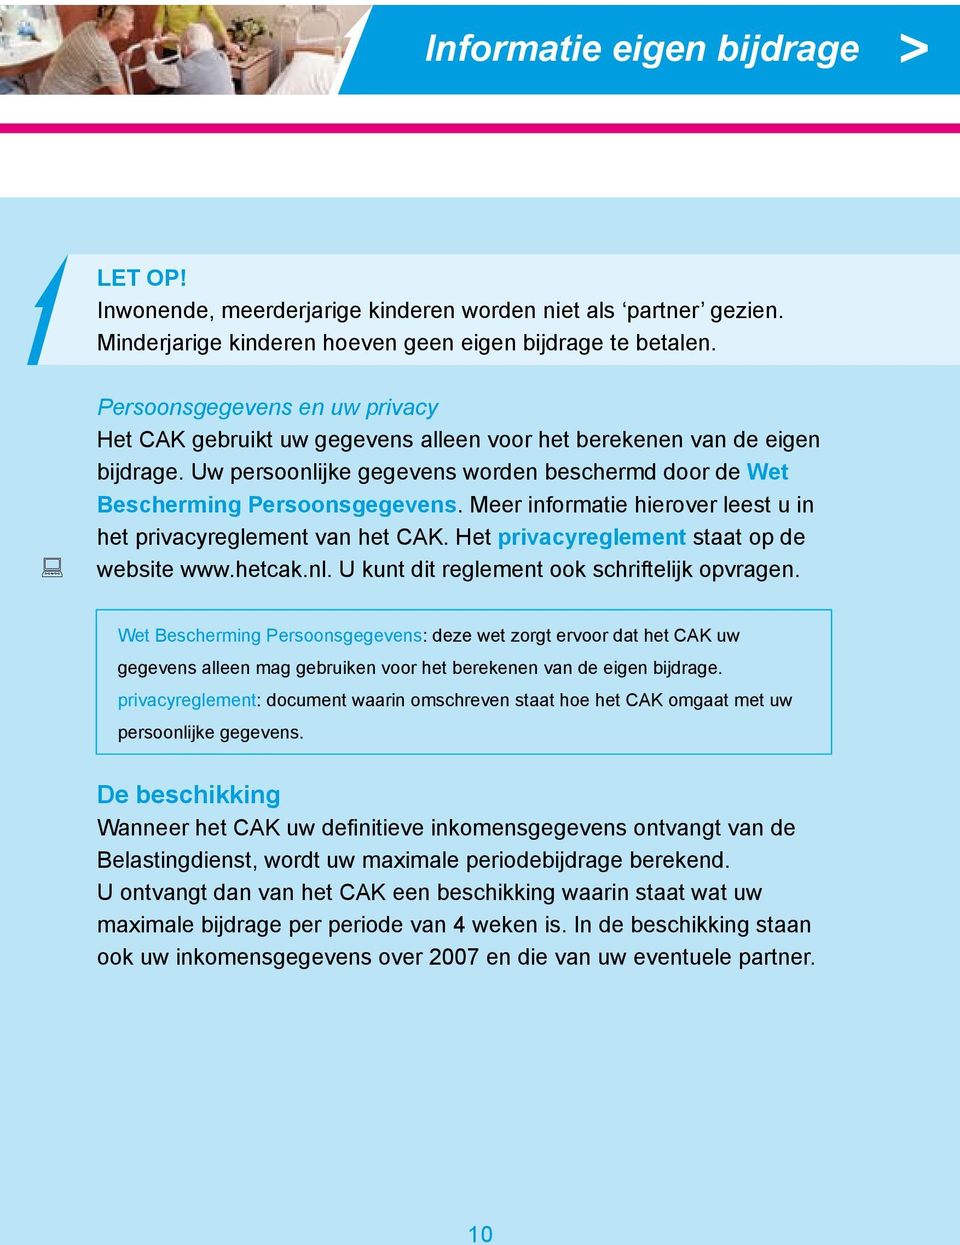 Meer informatie hierover leest u in het privacyreglement van het CAK. Het privacyreglement staat op de website www.hetcak.nl. U kunt dit reglement ook schriftelijk opvragen.